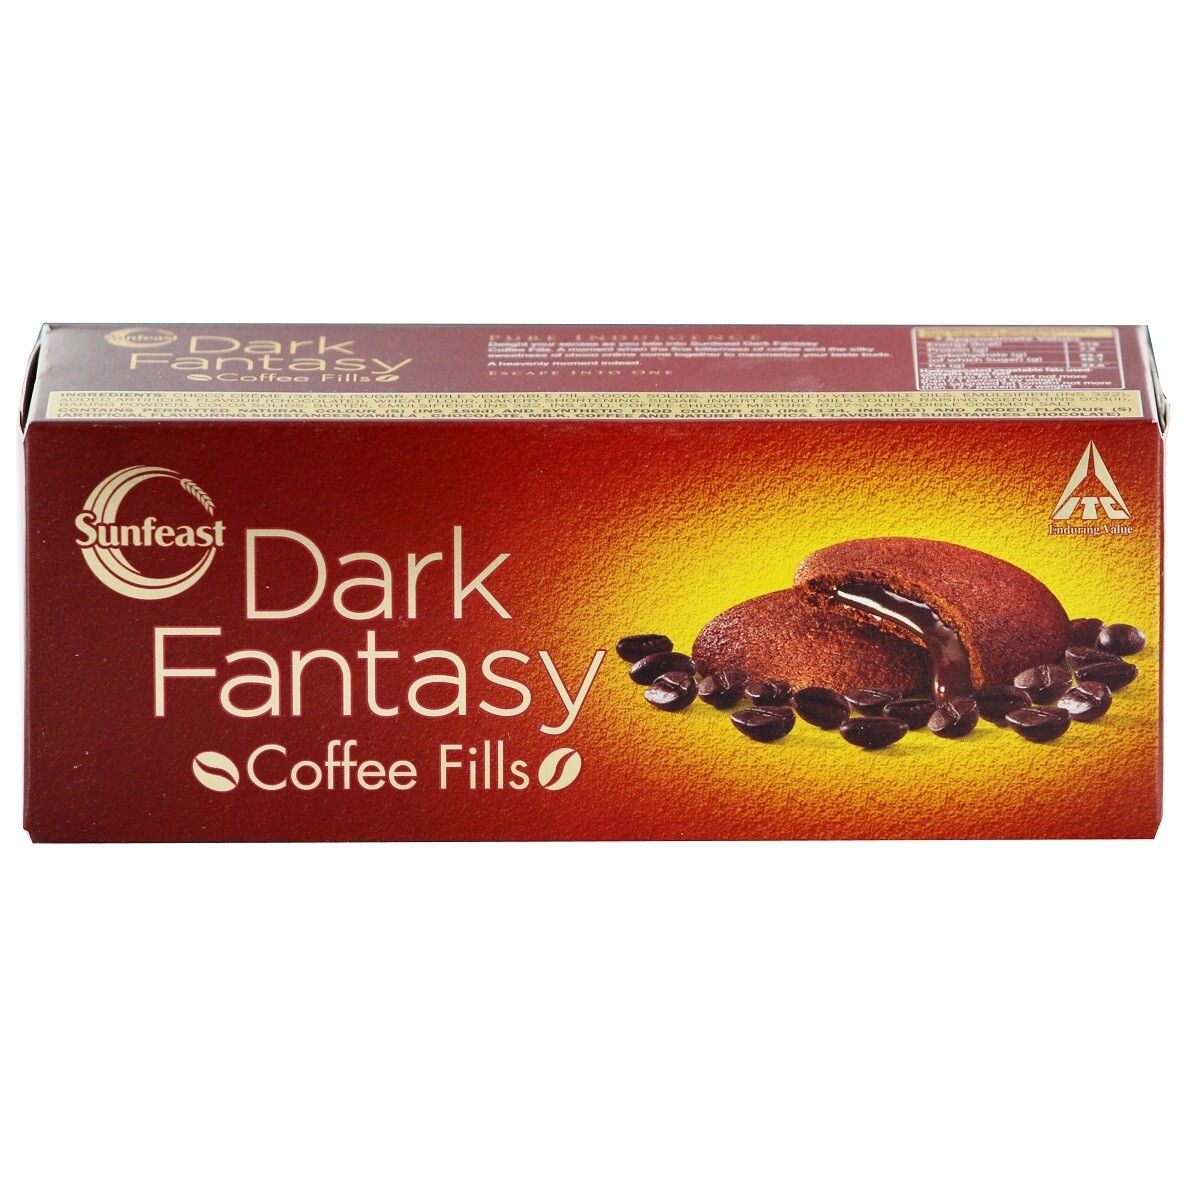 Sunfeast Dark Fantasy Coffee Fills Biscuit 75g